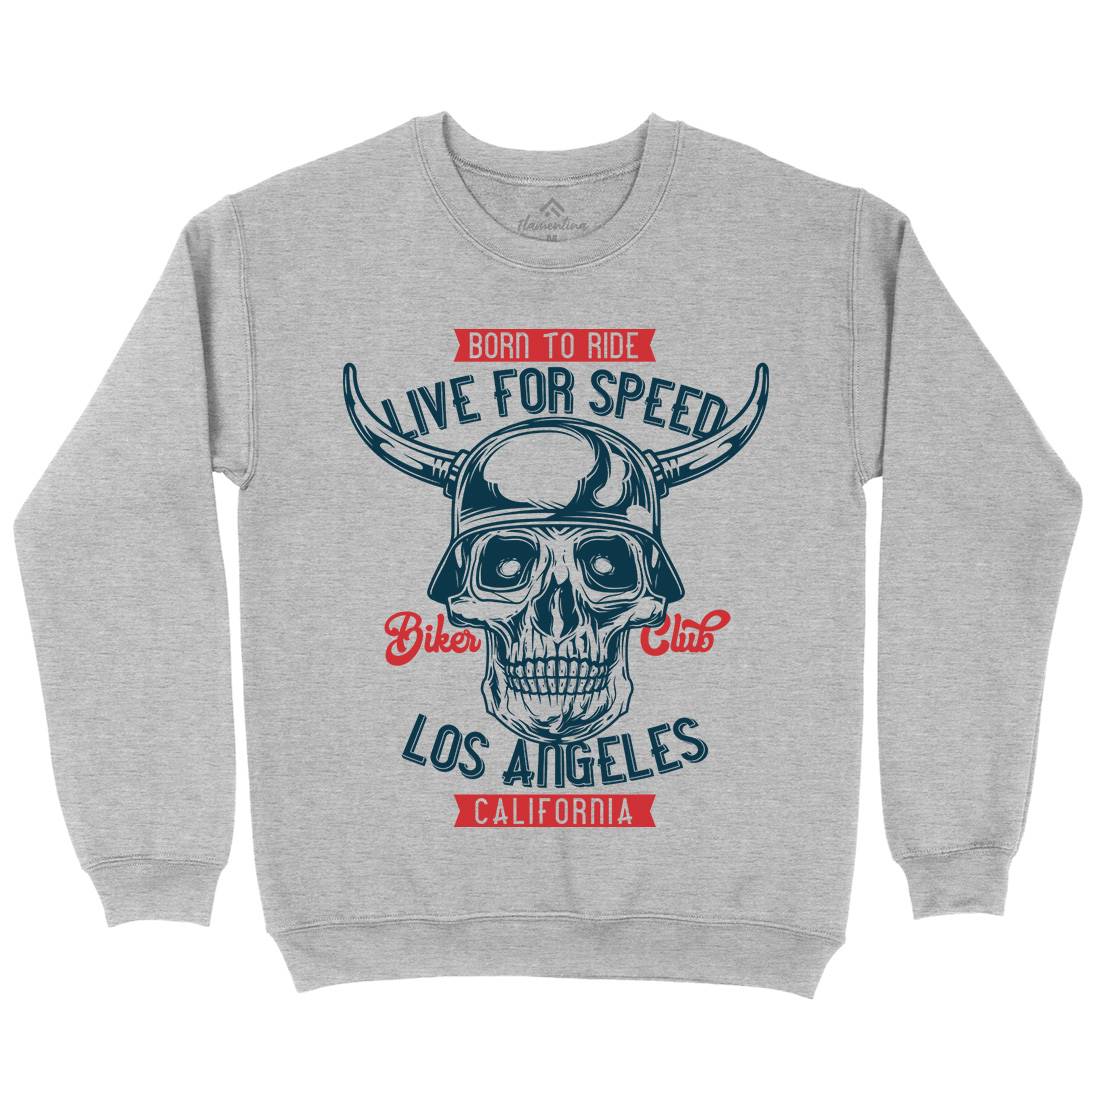 Live For Speed Kids Crew Neck Sweatshirt Motorcycles B851